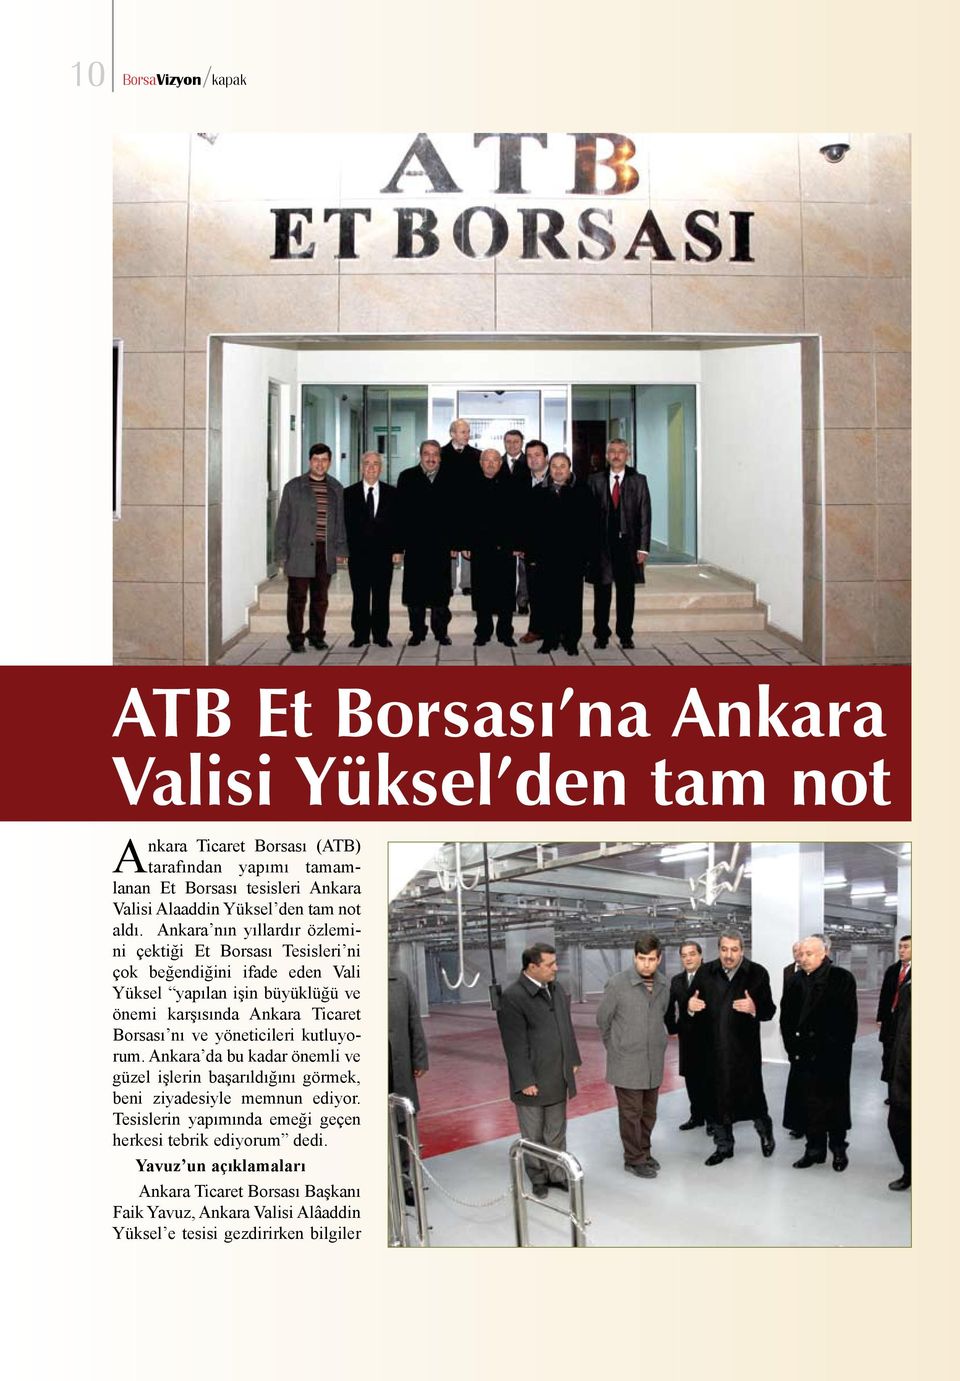 Ankara nın yıllardır özlemini çektiği Et Borsası Tesisleri ni çok beğendiğini ifade eden Vali Yüksel yapılan işin büyüklüğü ve önemi karşısında Ankara Ticaret Borsası nı